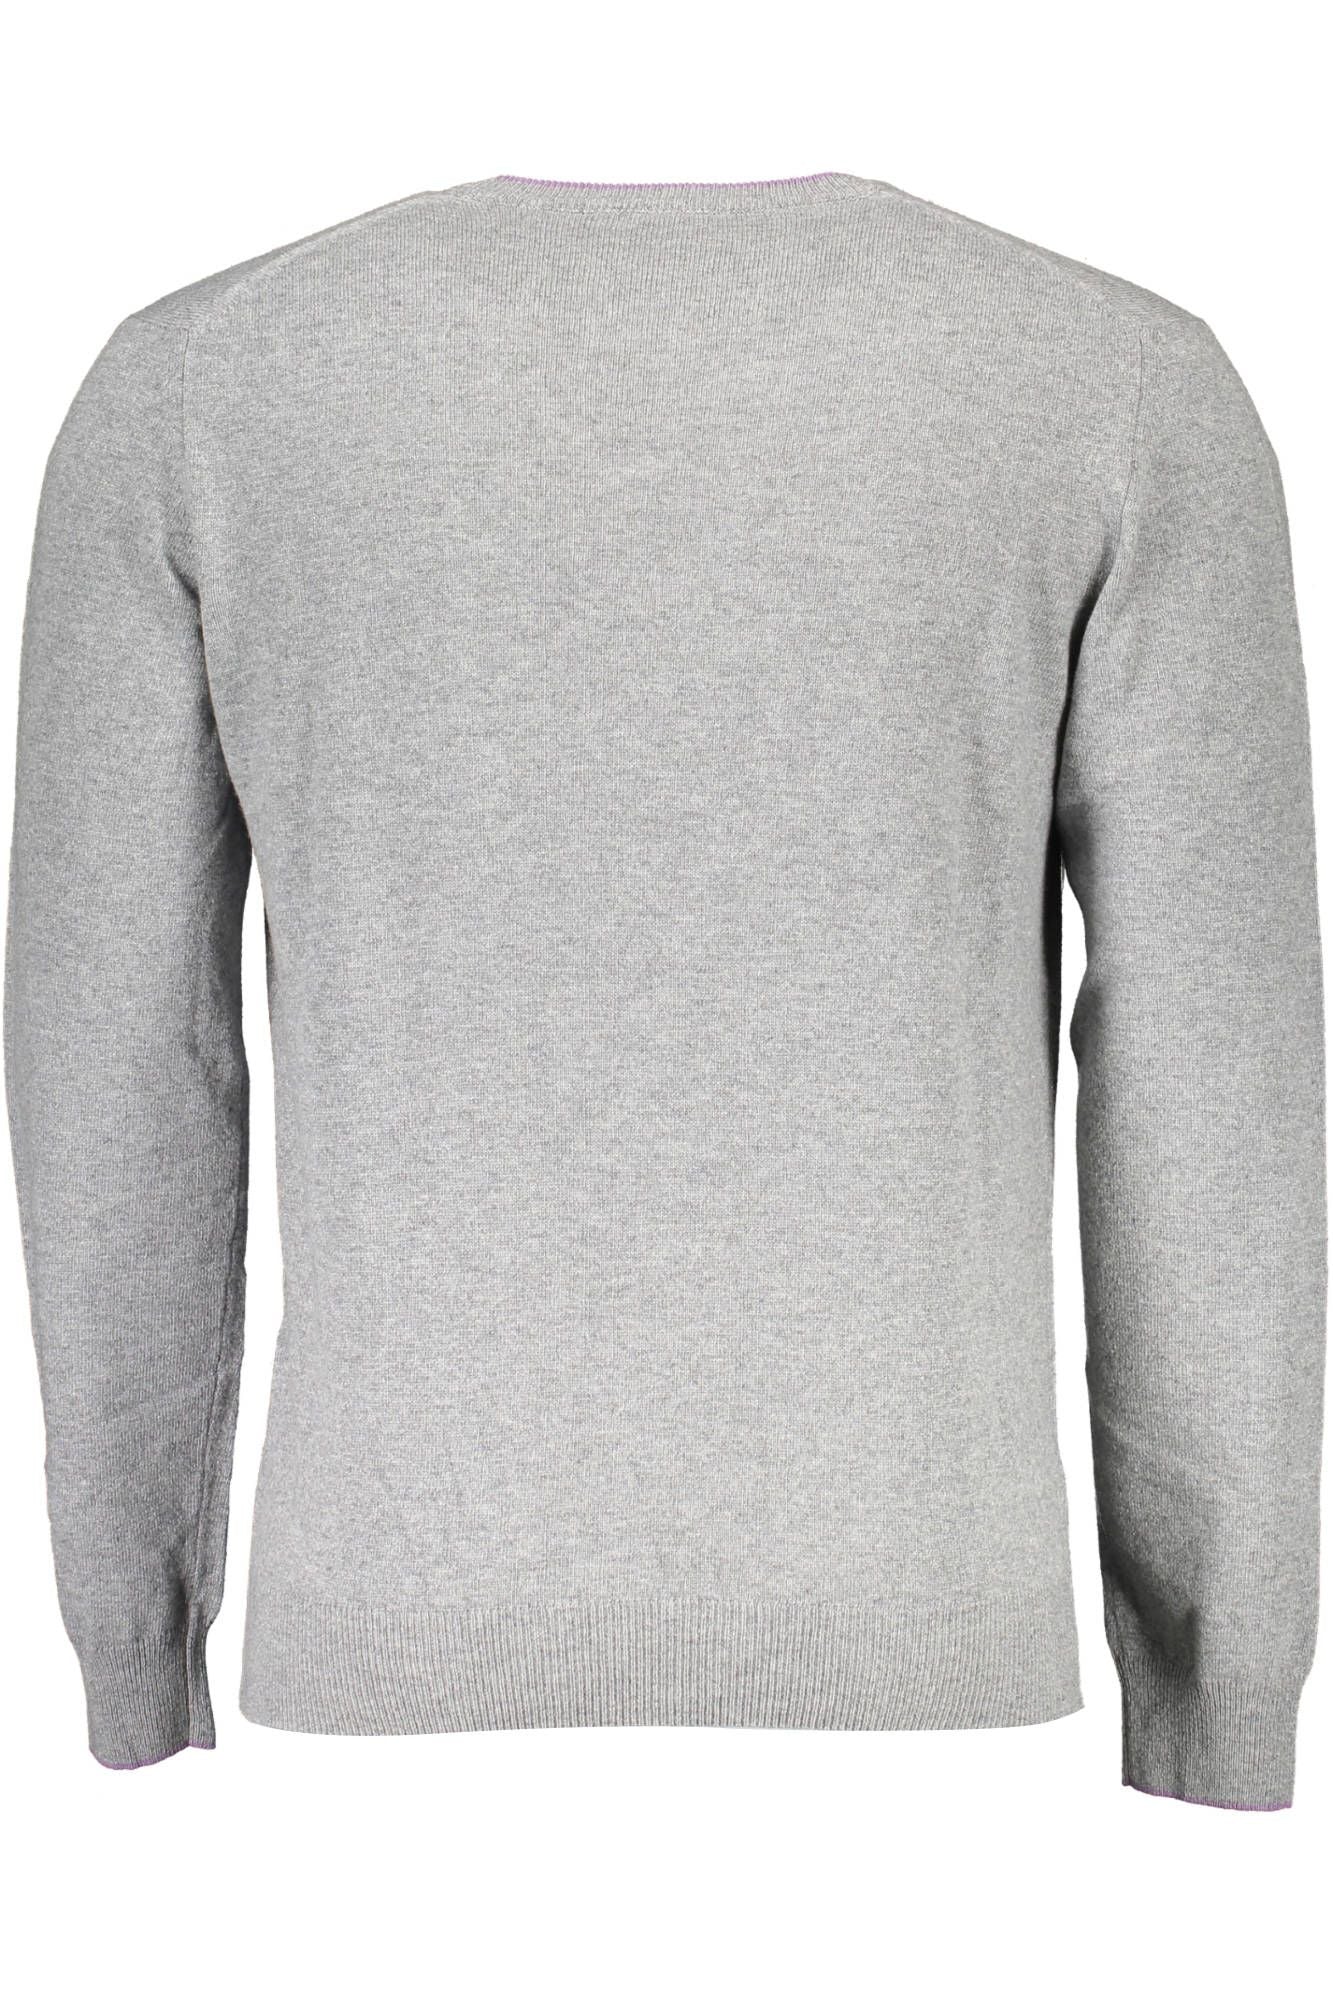 Harmont & Blaine Men's Gray Wool V-neck Sweater